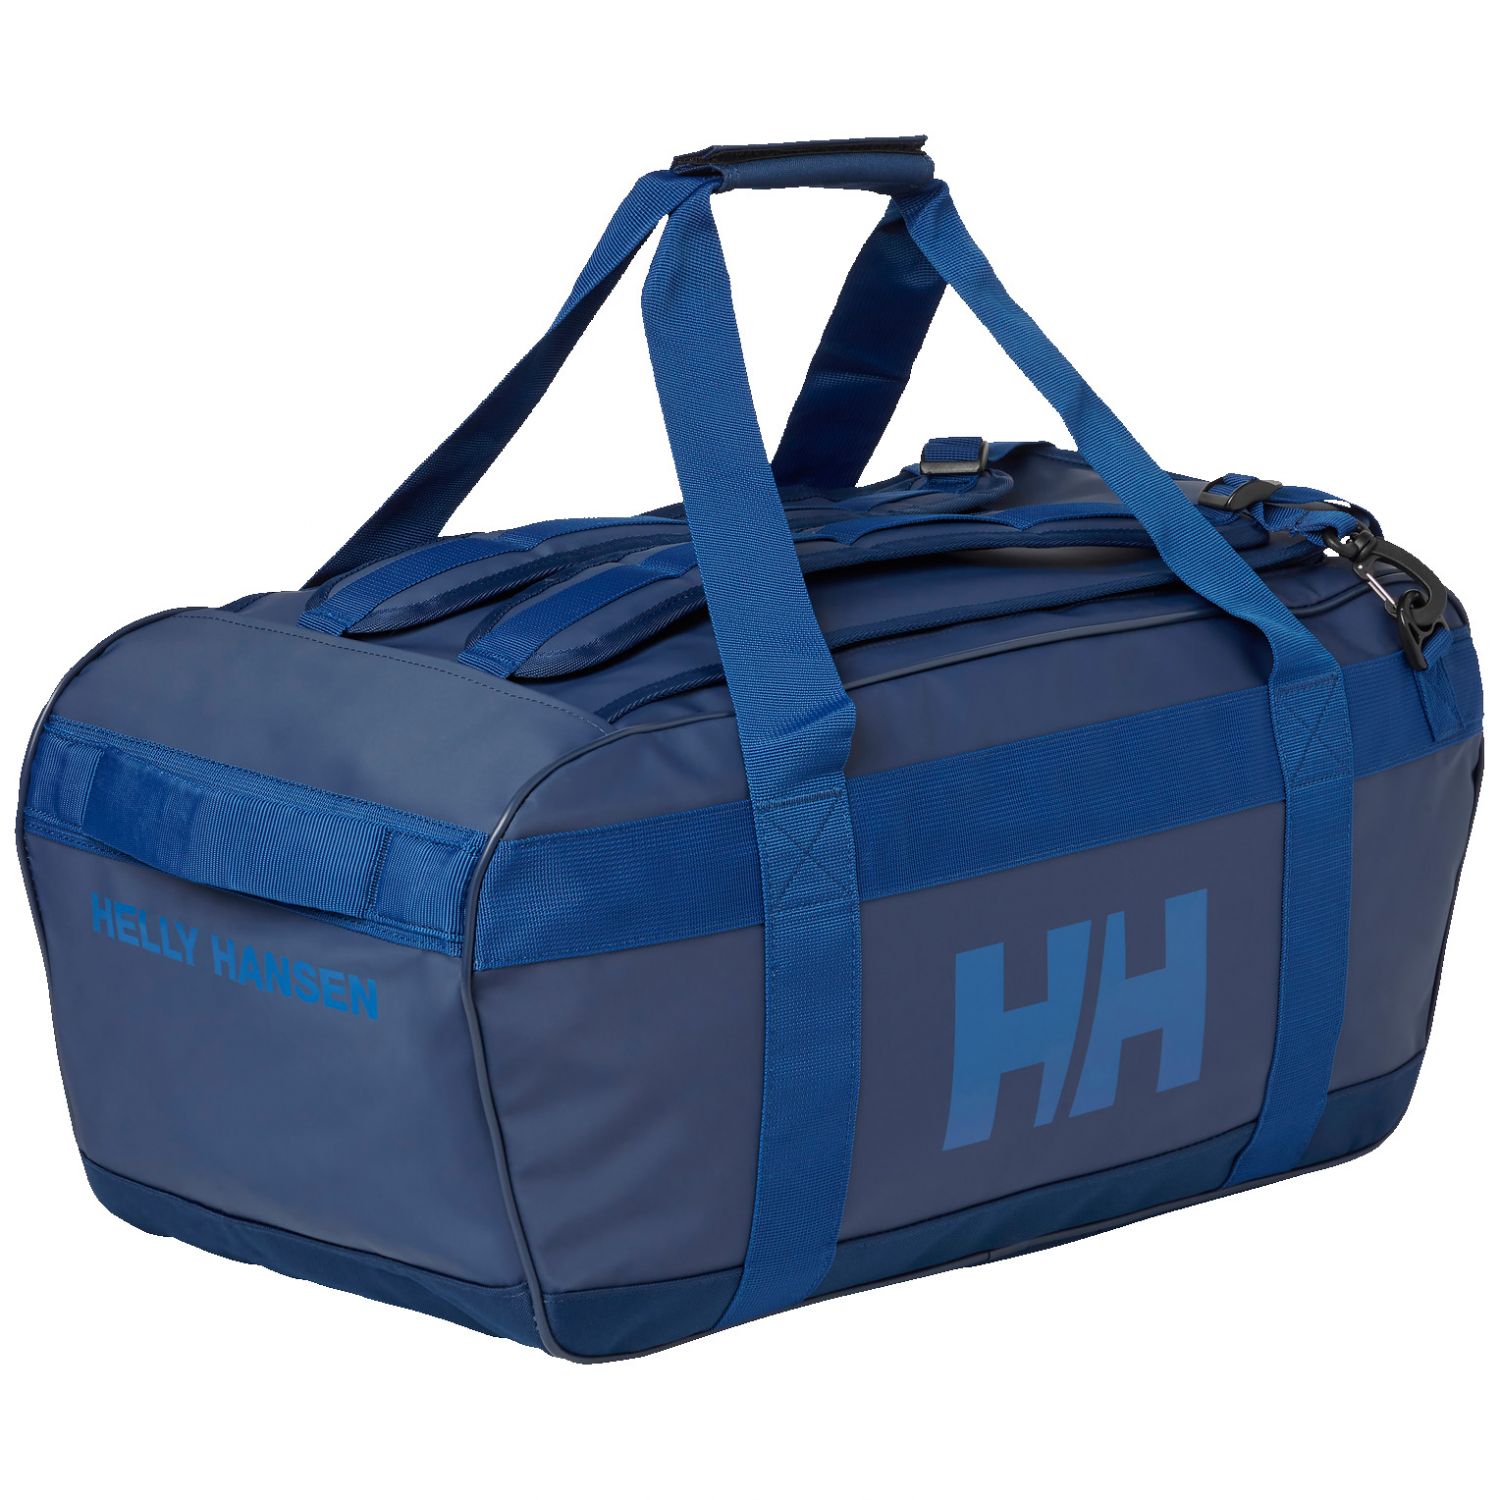 Brug Helly Hansen Scout Duffel Bag, 50L, ocean til en forbedret oplevelse